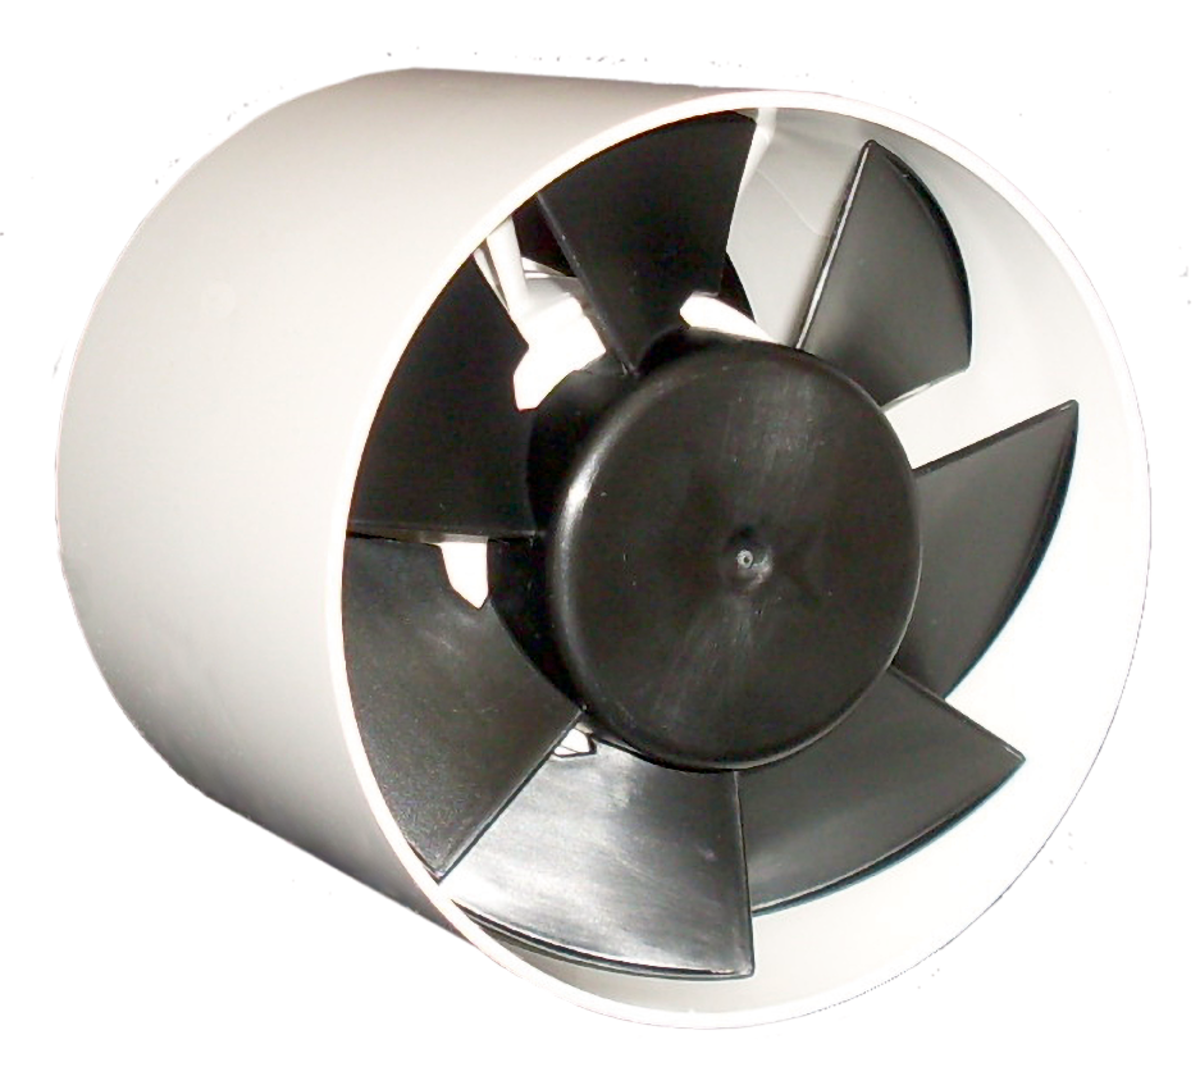 IF - Buitiniai ventiliatoriai - Ventiliatoriai - Produktai - Systemair